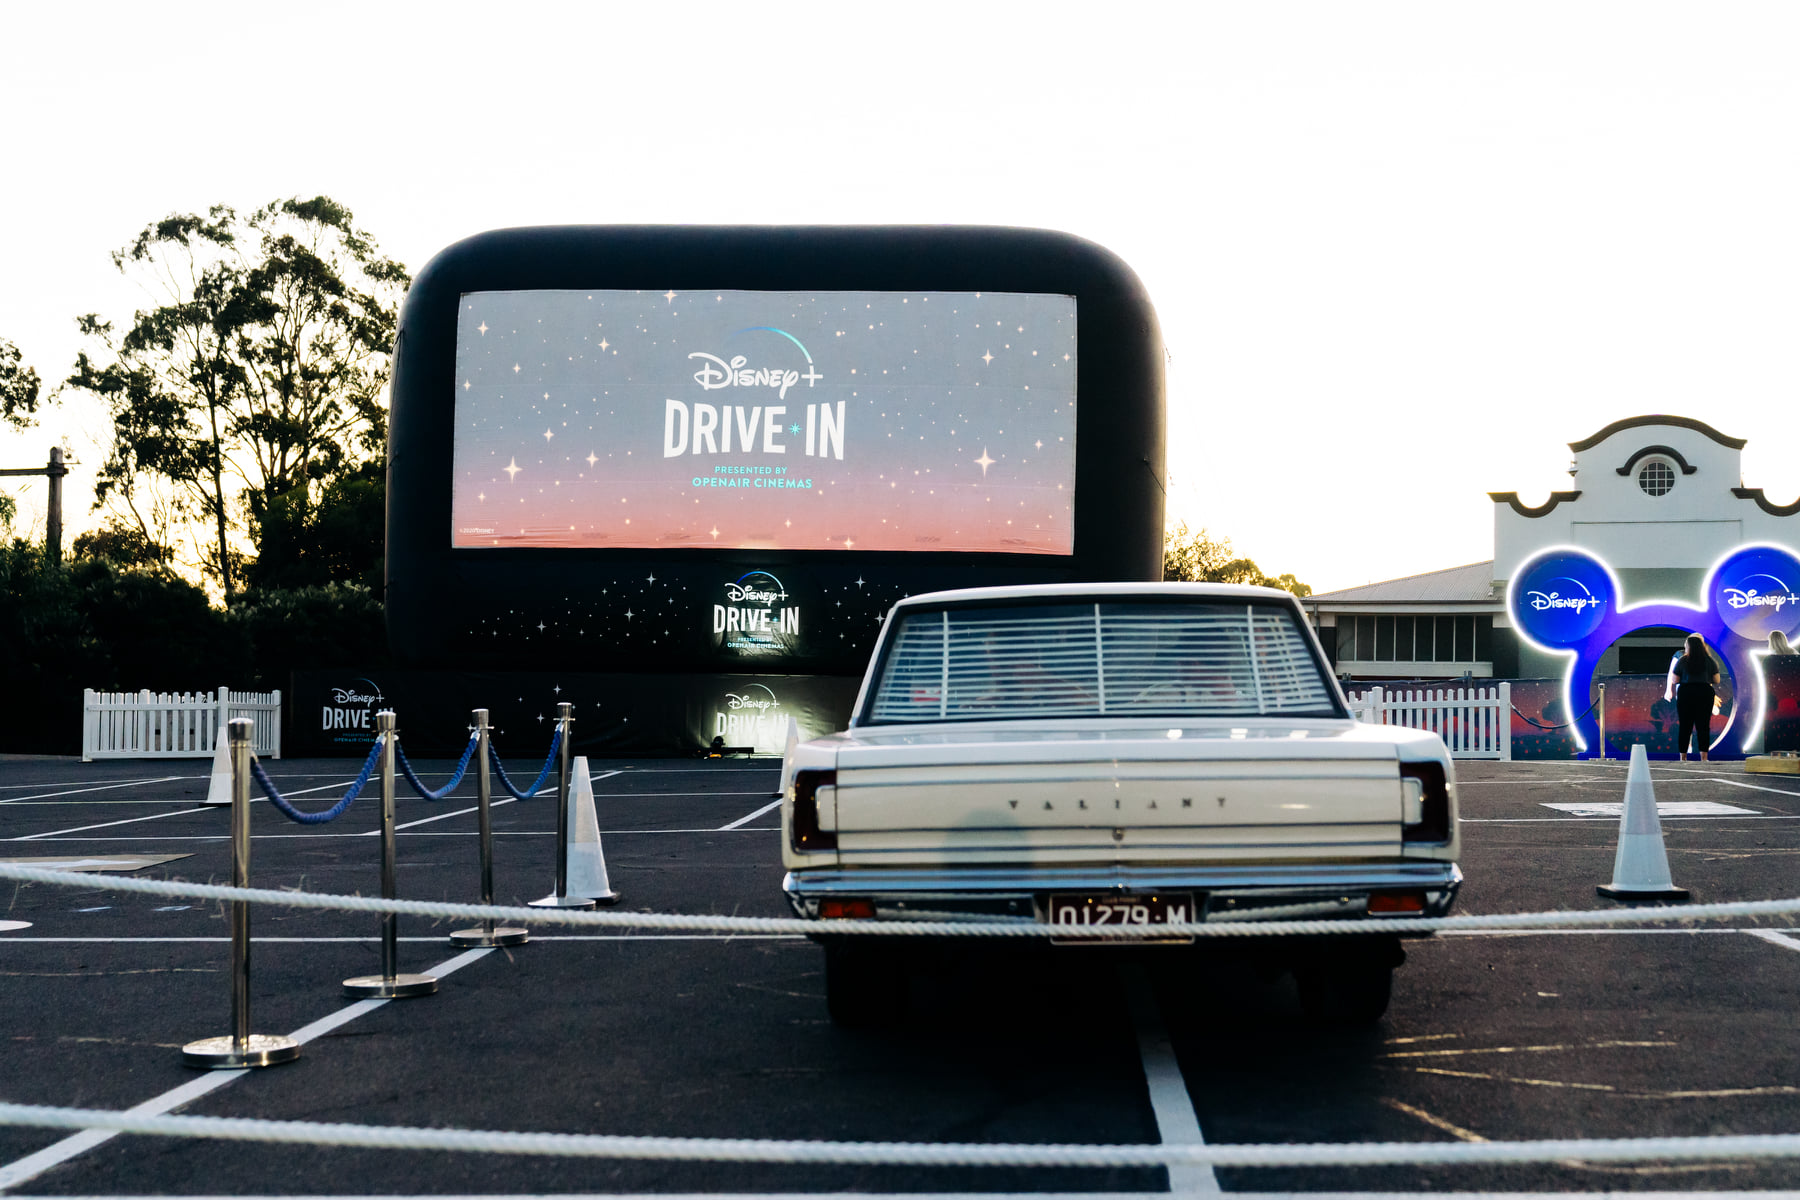 melbourne Disney+ drive in cinema